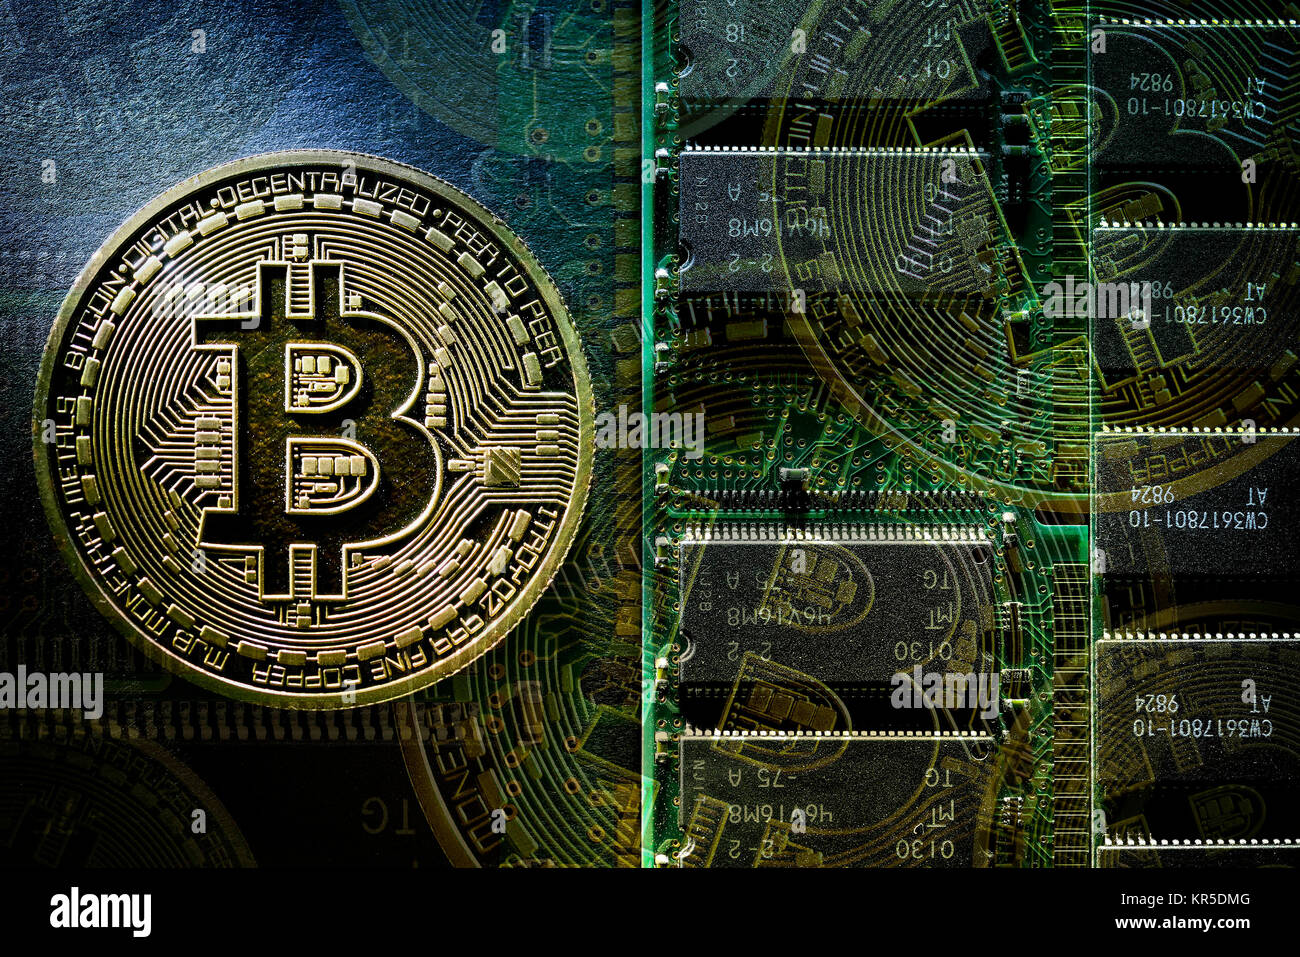 Con signo de moneda Bitcoin, Münze mit Bitcoin-Zeichen Foto de stock